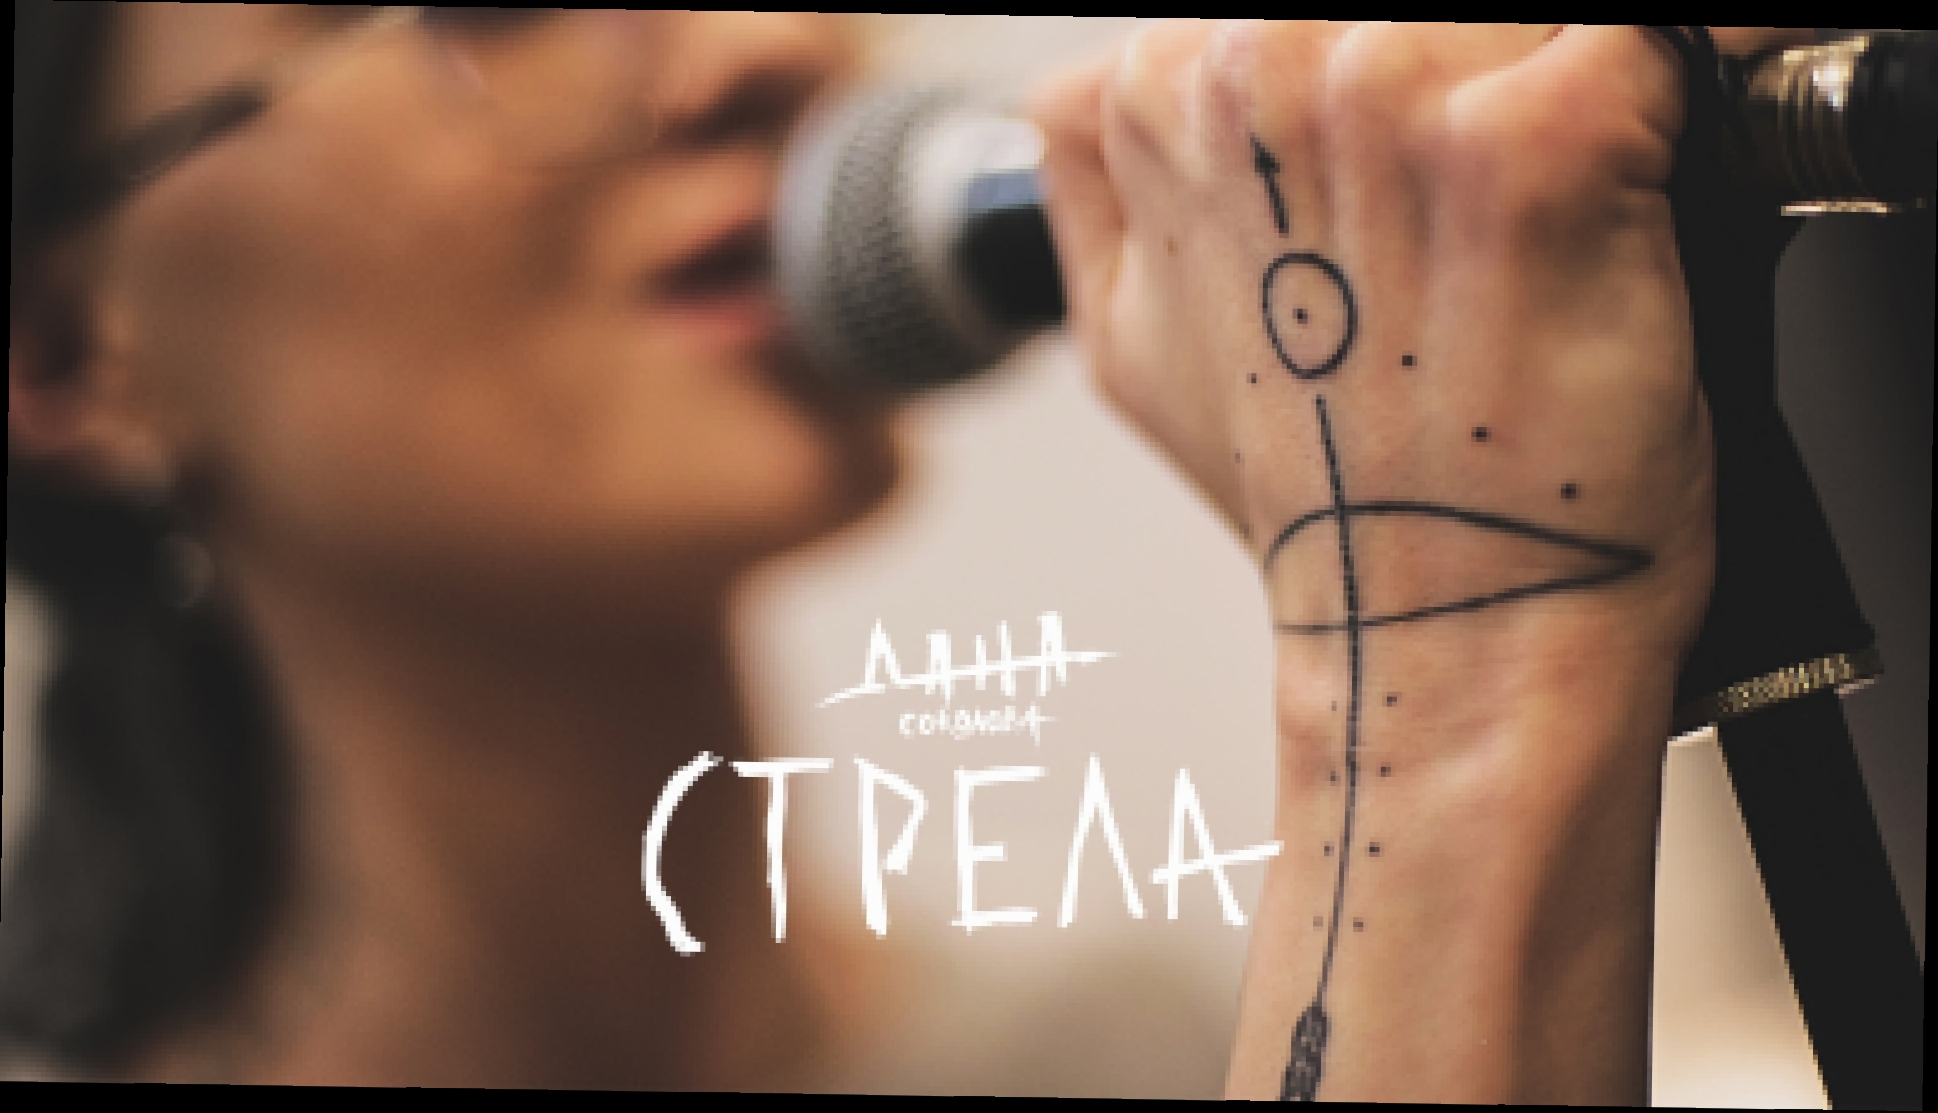 Подборка Дана Соколова - Стрела (OST реалити-шоу Пацанки 2) 